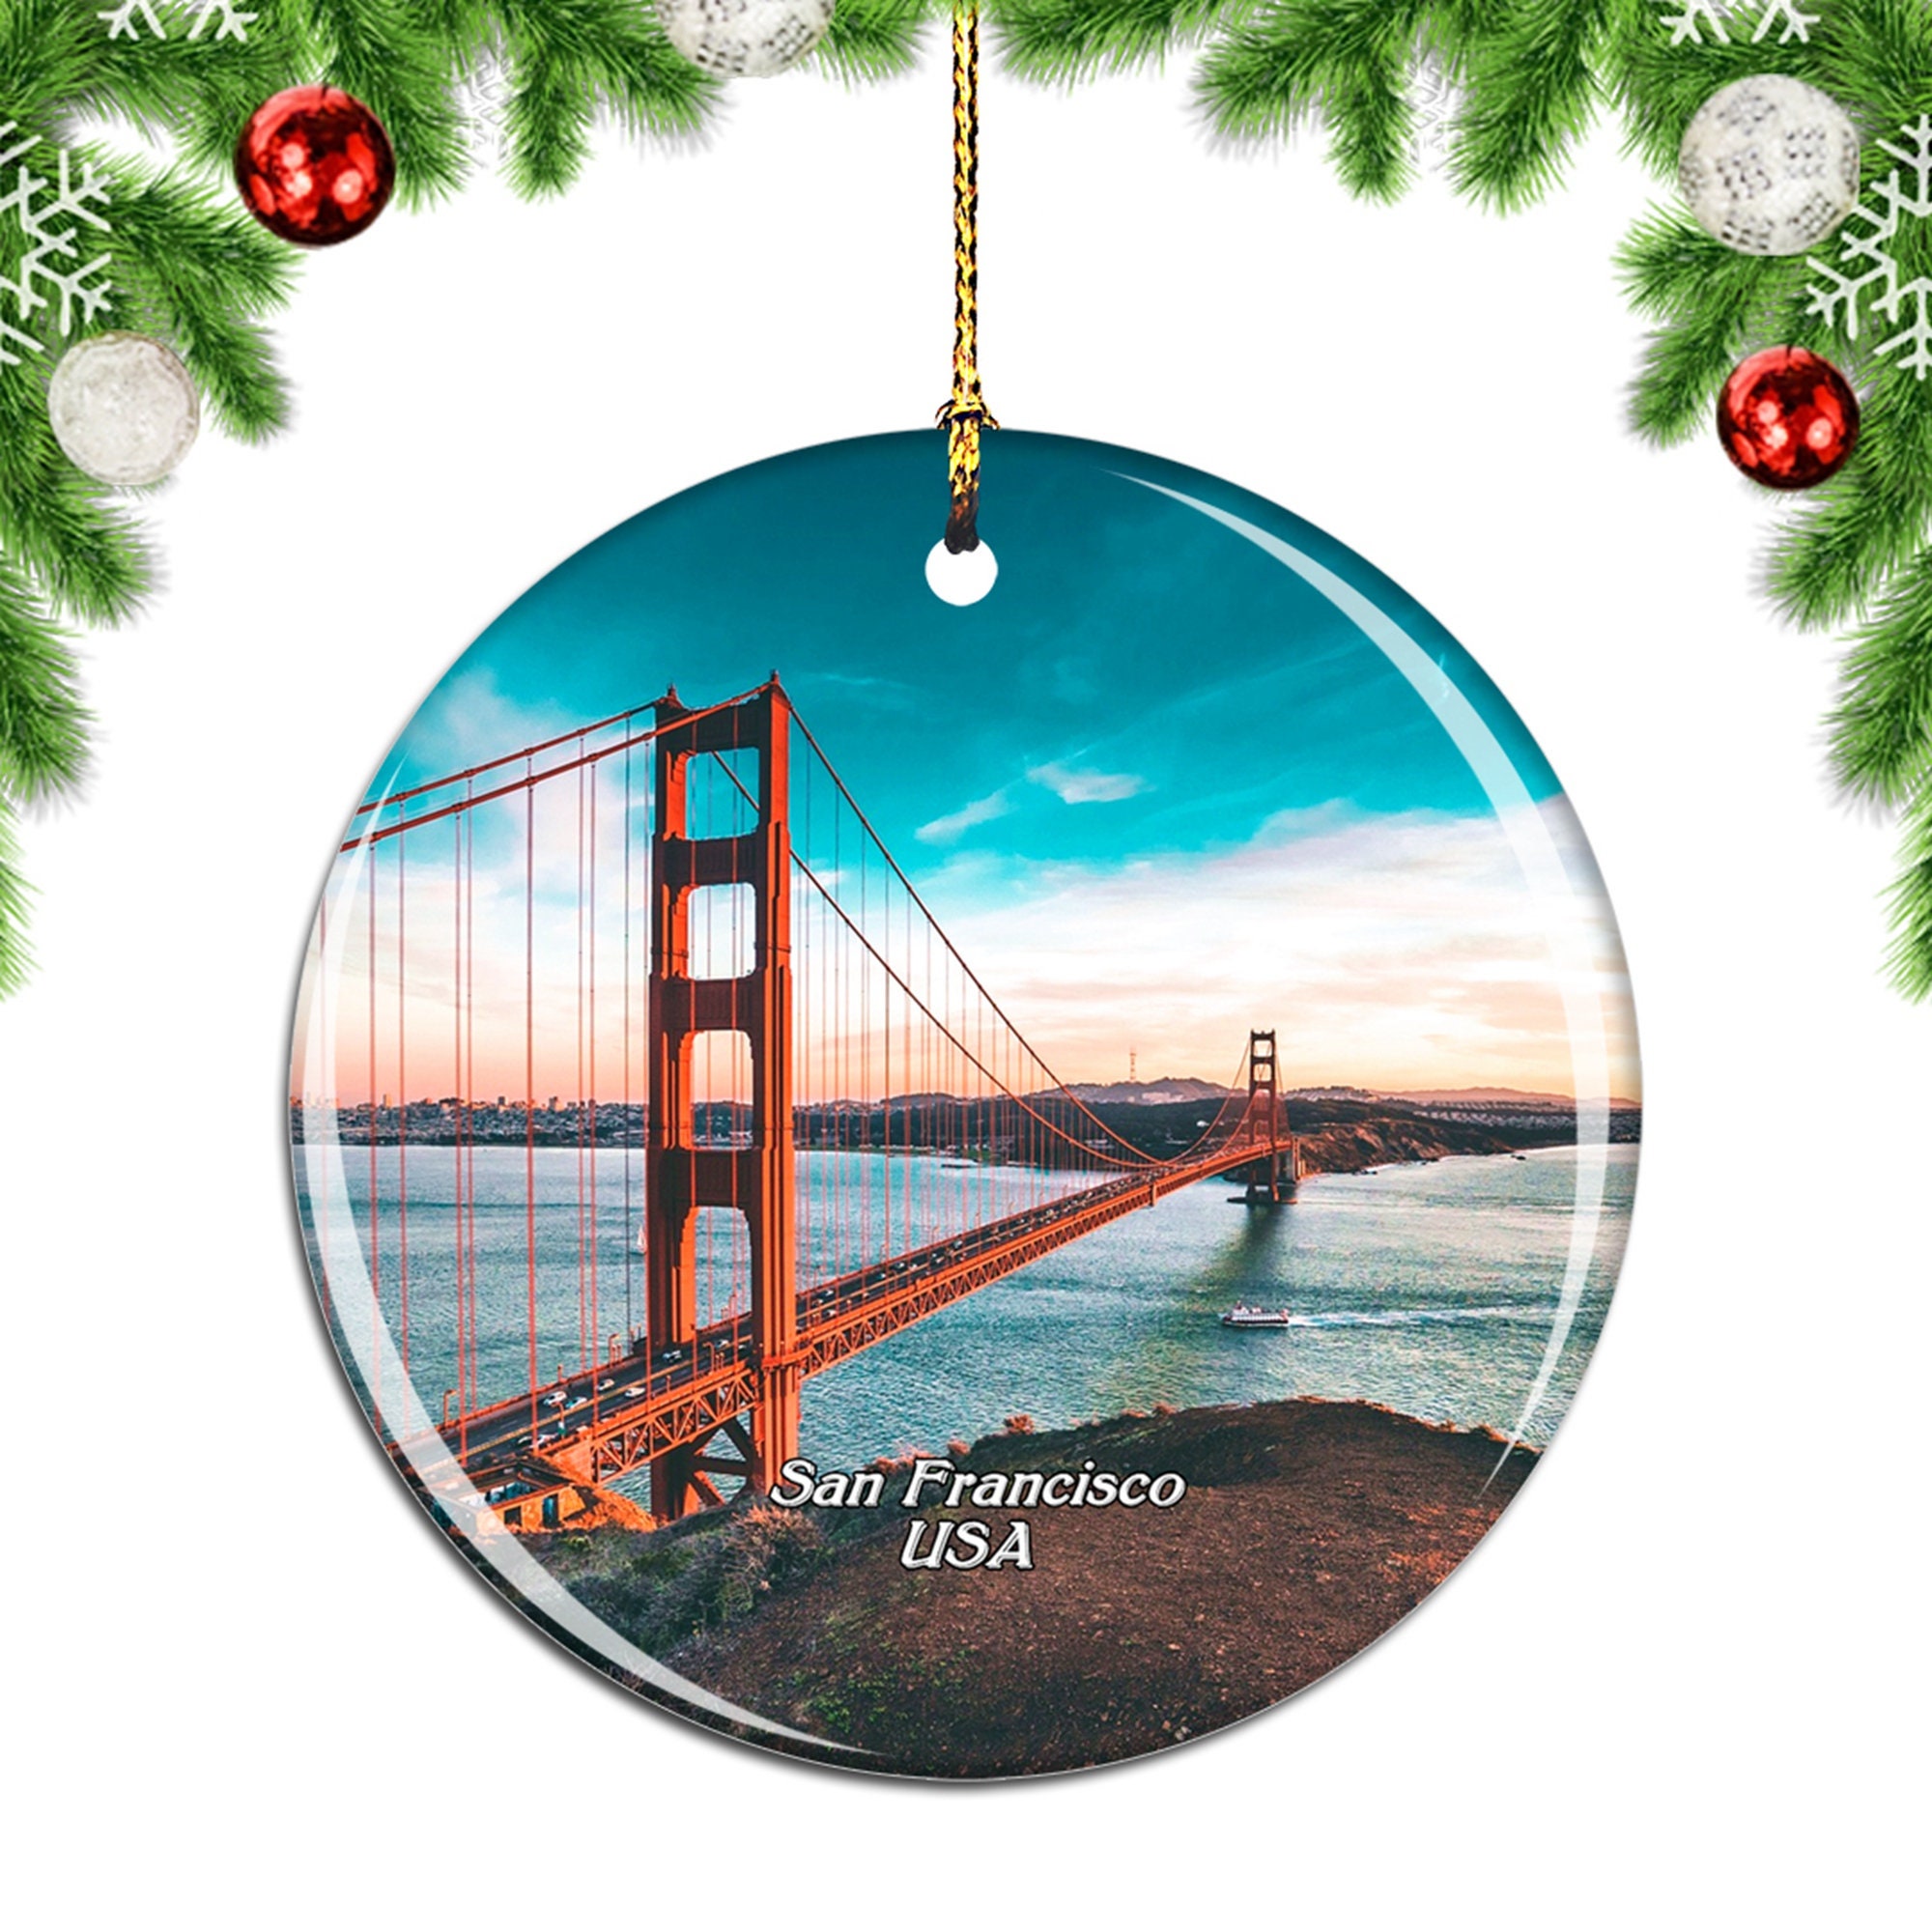 Discover Golden Gate Bridge San Francisco California USA Christmas Ornament